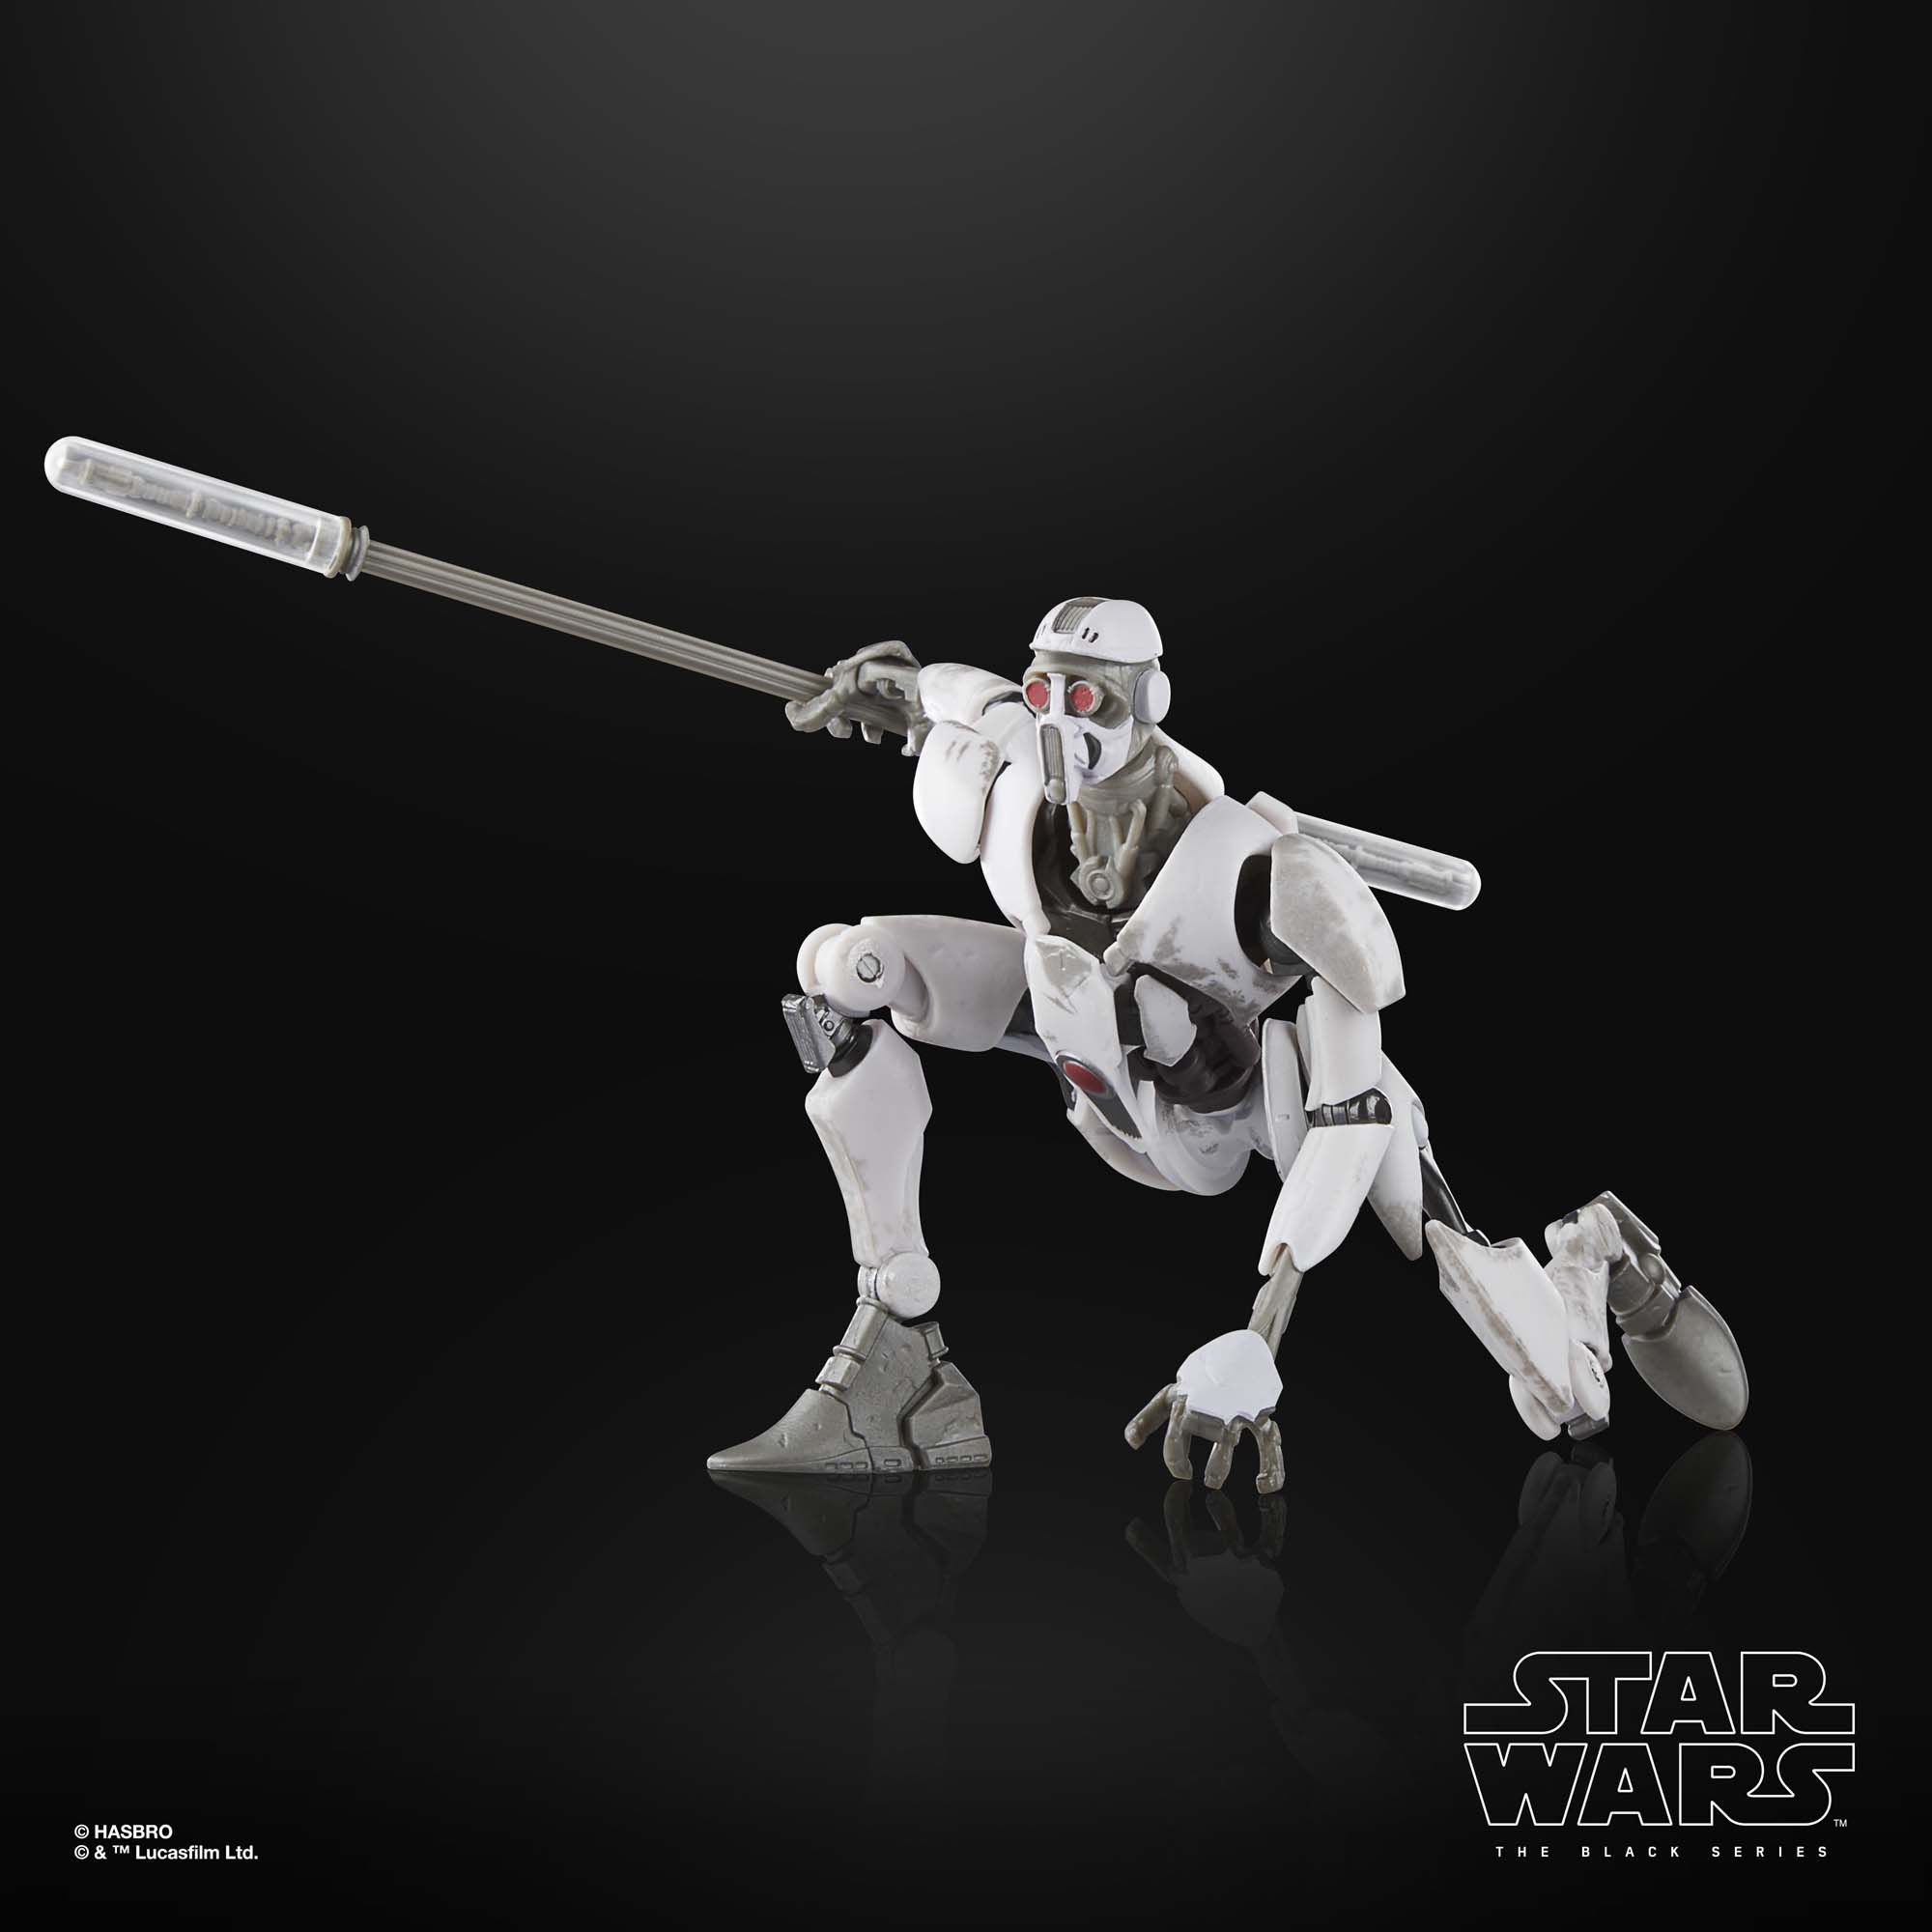 Star Wars The Black Series MagnaGuardStar Wars Action-Figur (15 cm) F71025X0 5010996136756